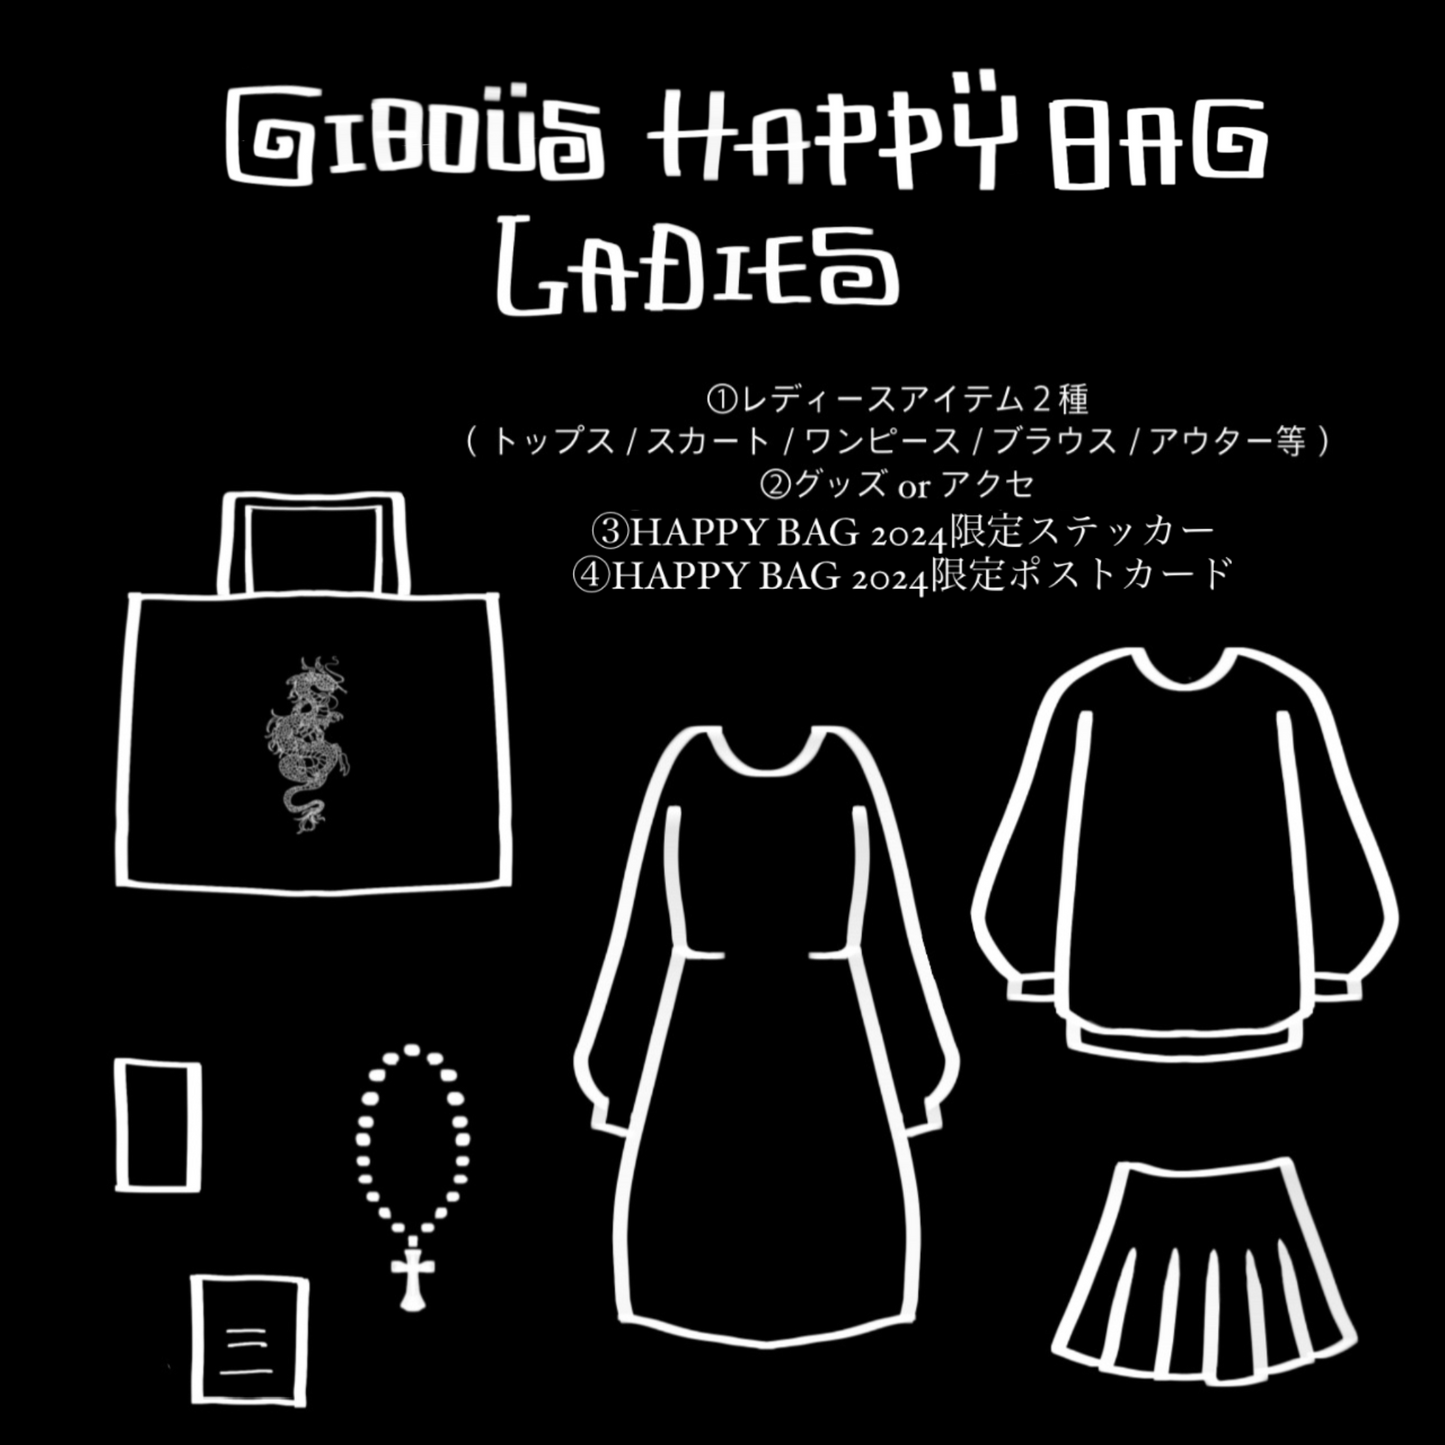 gibous happy bag ladies 2024